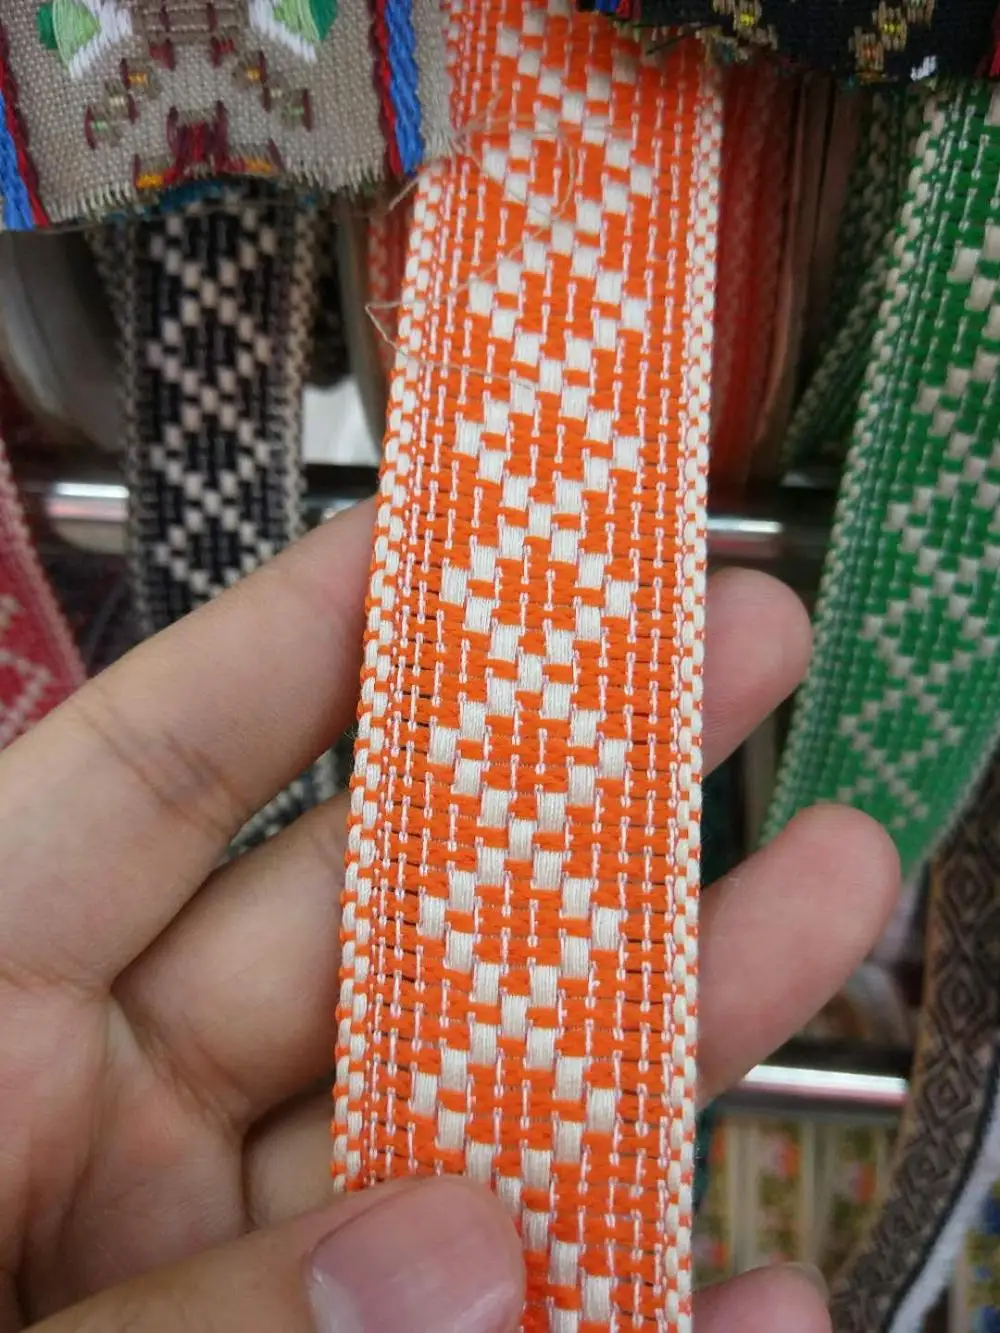 Тесьма хлопок волна лента 3 см широкая лента в этническом стиле Вышивка Стиль отделка аксессуар для сумки/одежды/homedeco - Цвет: Orange